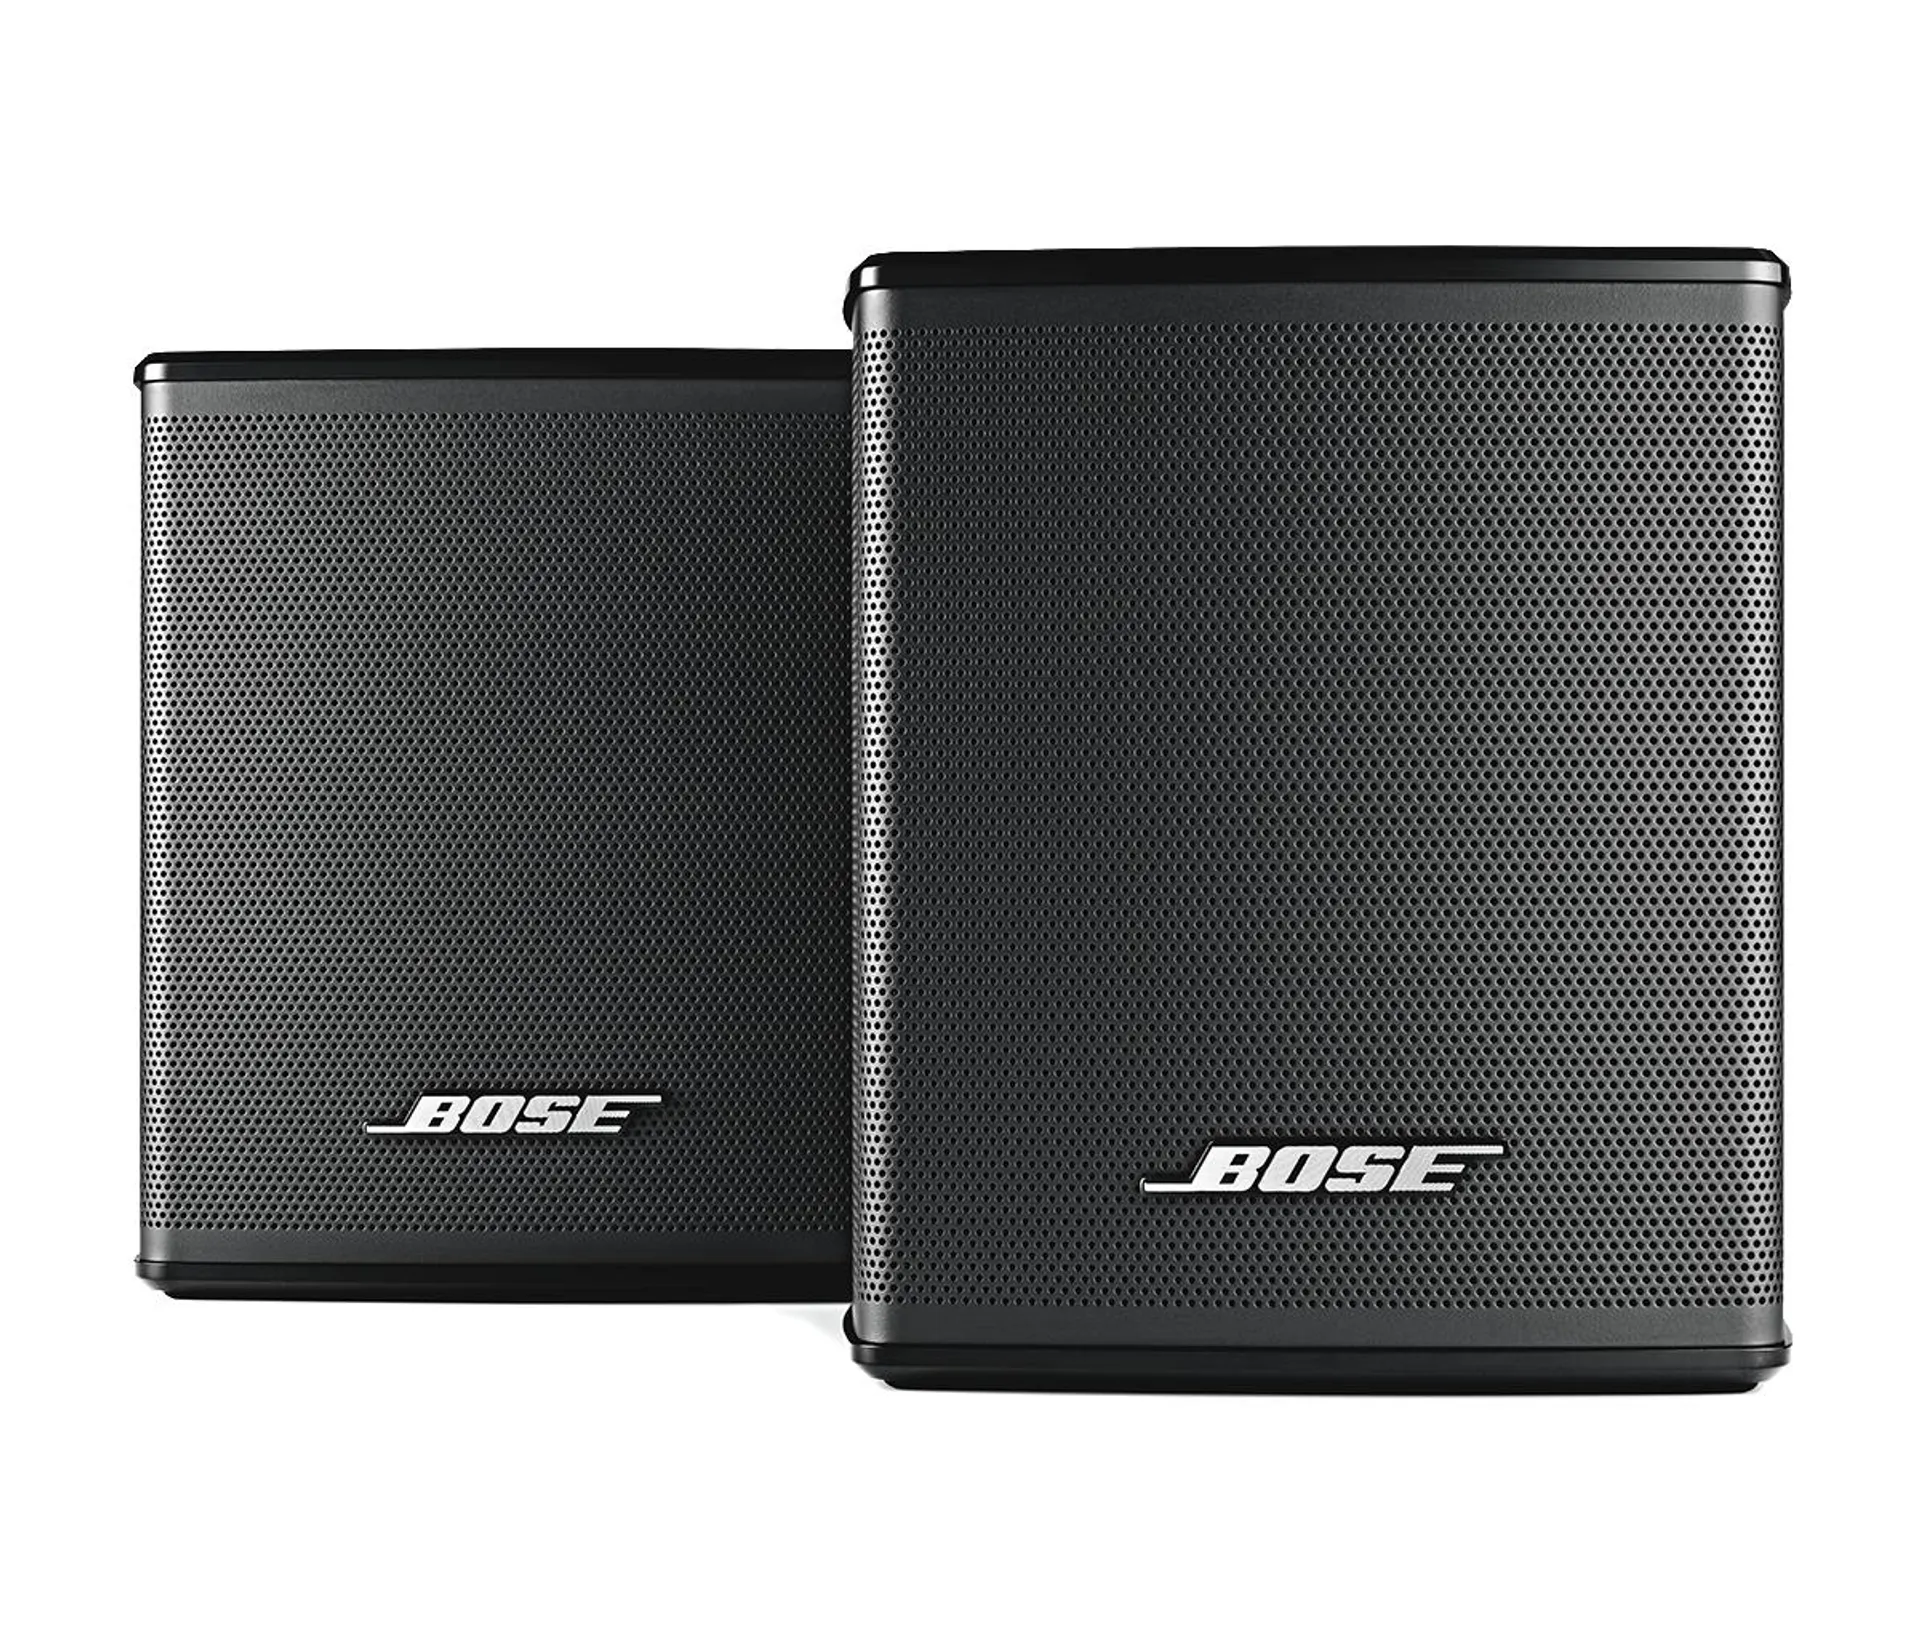 Bose Surround Speakers – Refurbished